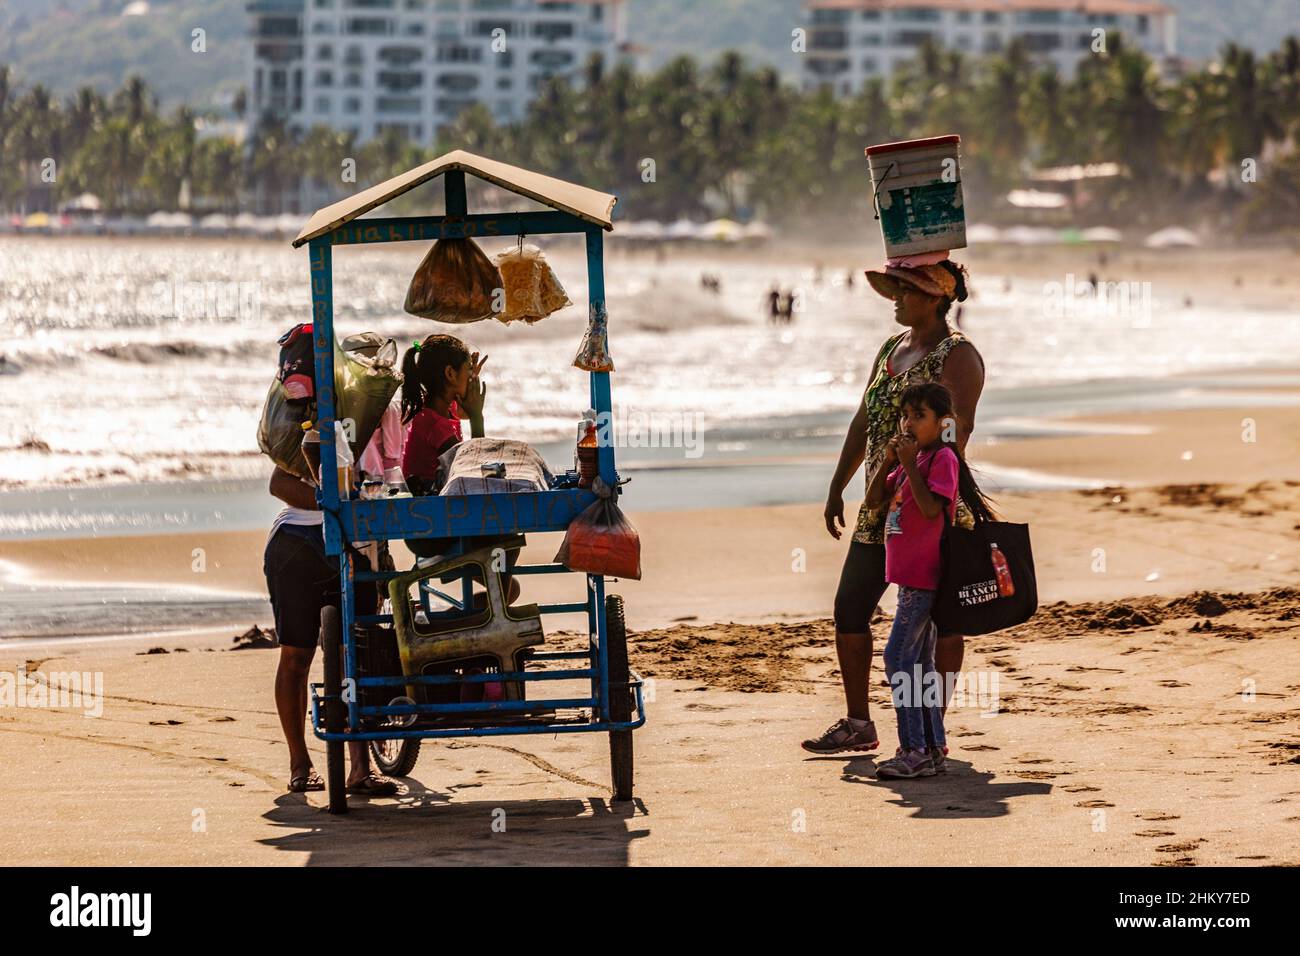 Vendor. Manzanillo beach. Pacific Ocean. Colima. Mexico, North America Stock Photo